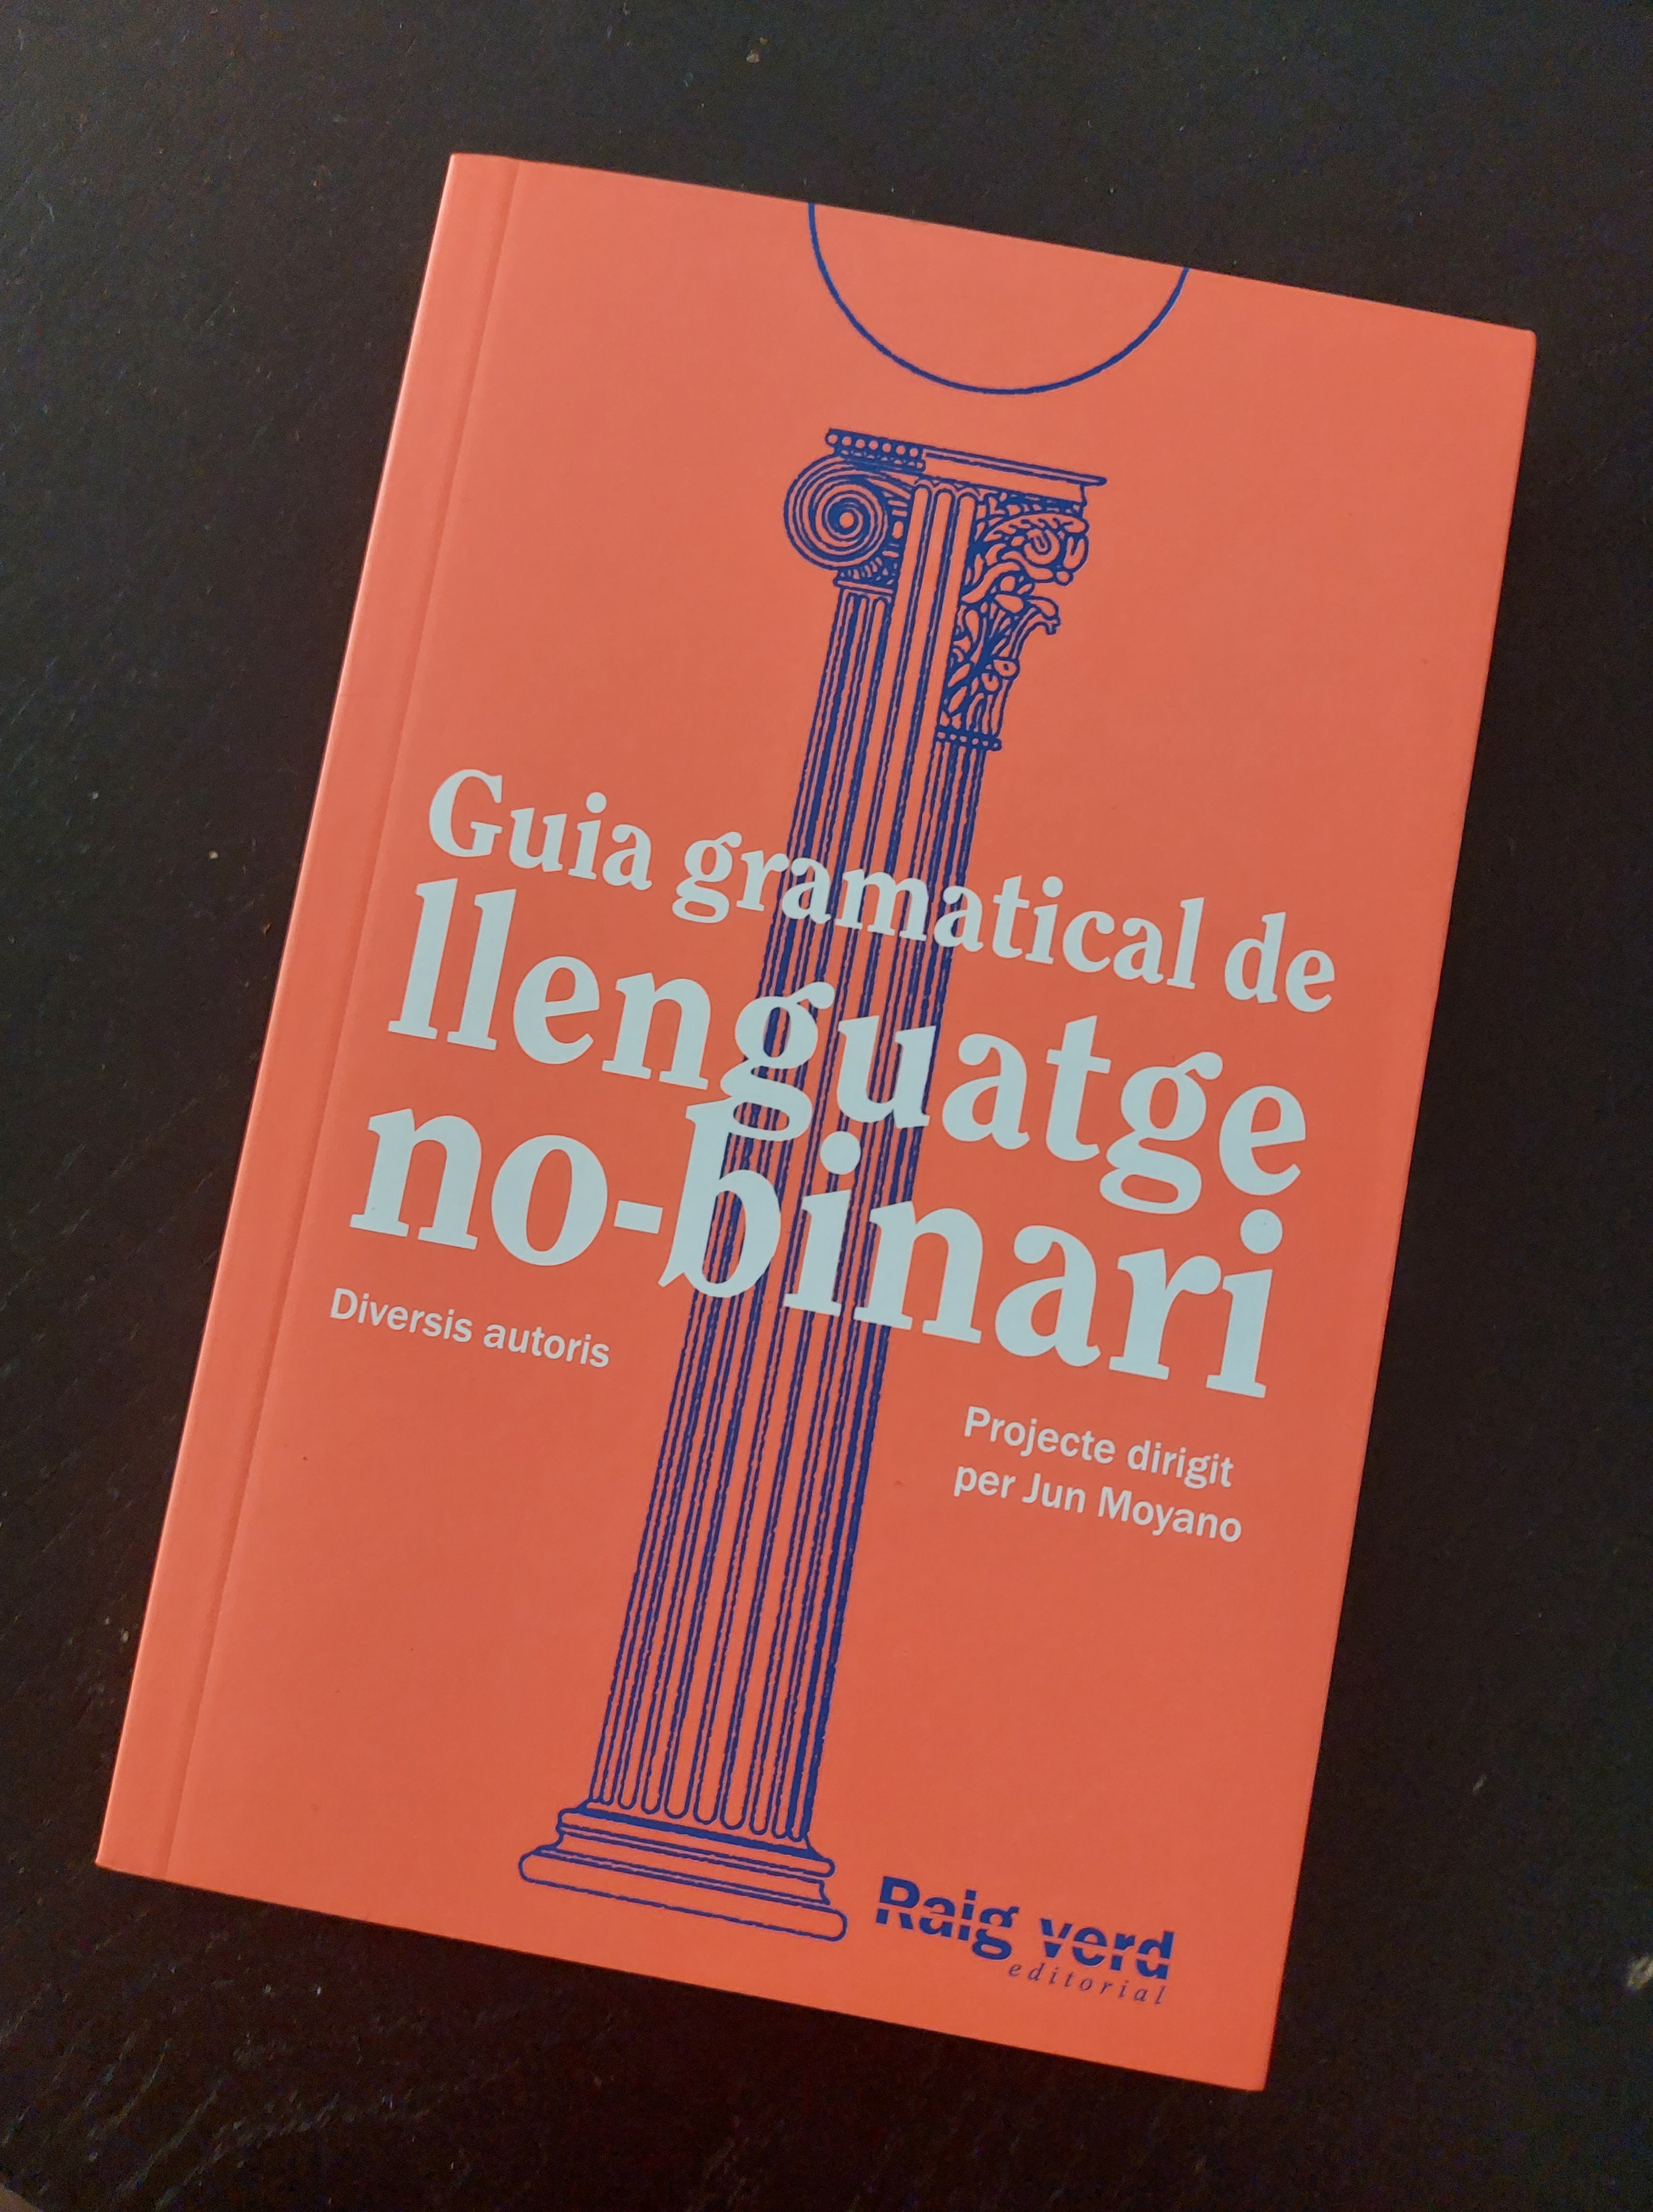 Llibre "guia gramatical de llenguatge no-binari". Te la coberta taronja fluorescent amb una columna que mescla els 3 estils grecs en blau mari i el títol en lletres blanques.